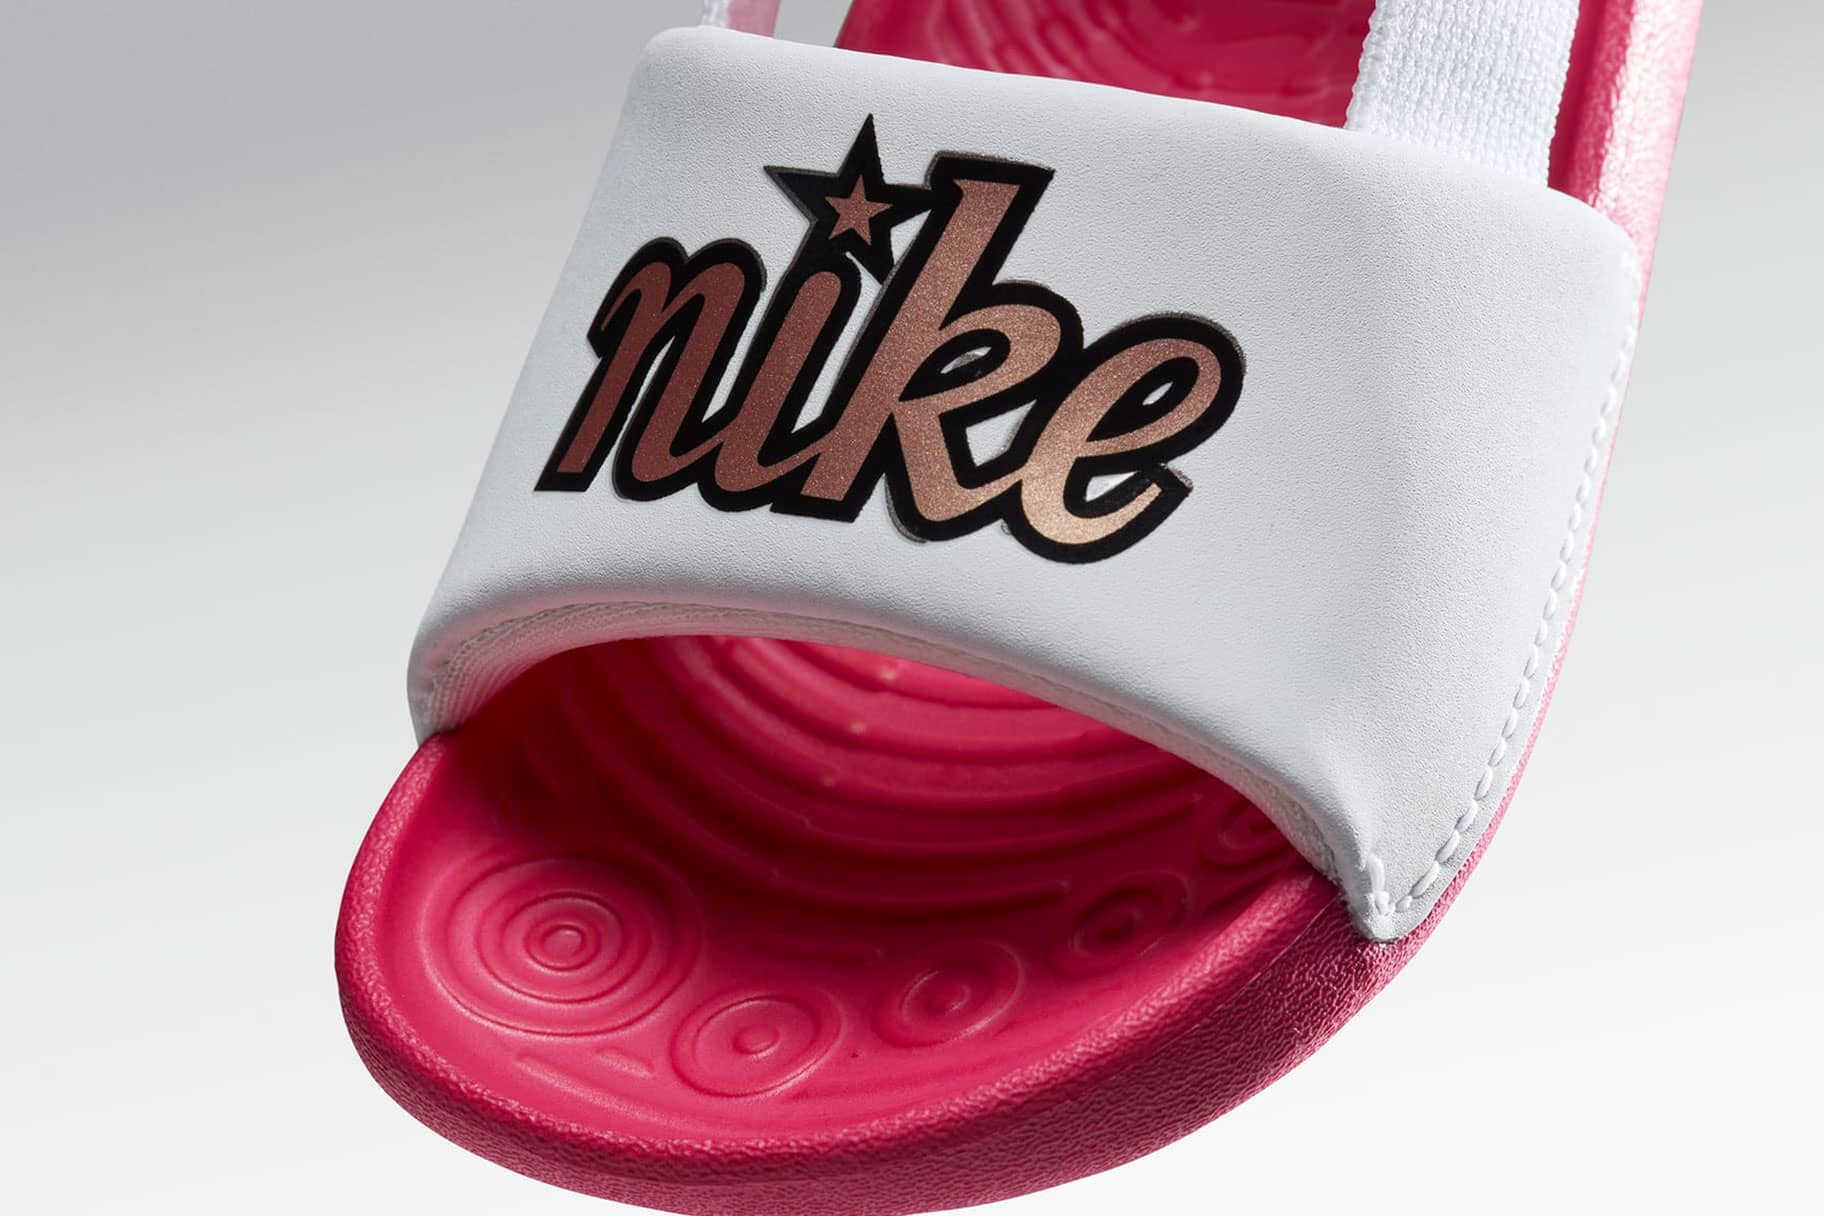 Las mejores sandalias de Nike para Nike ES